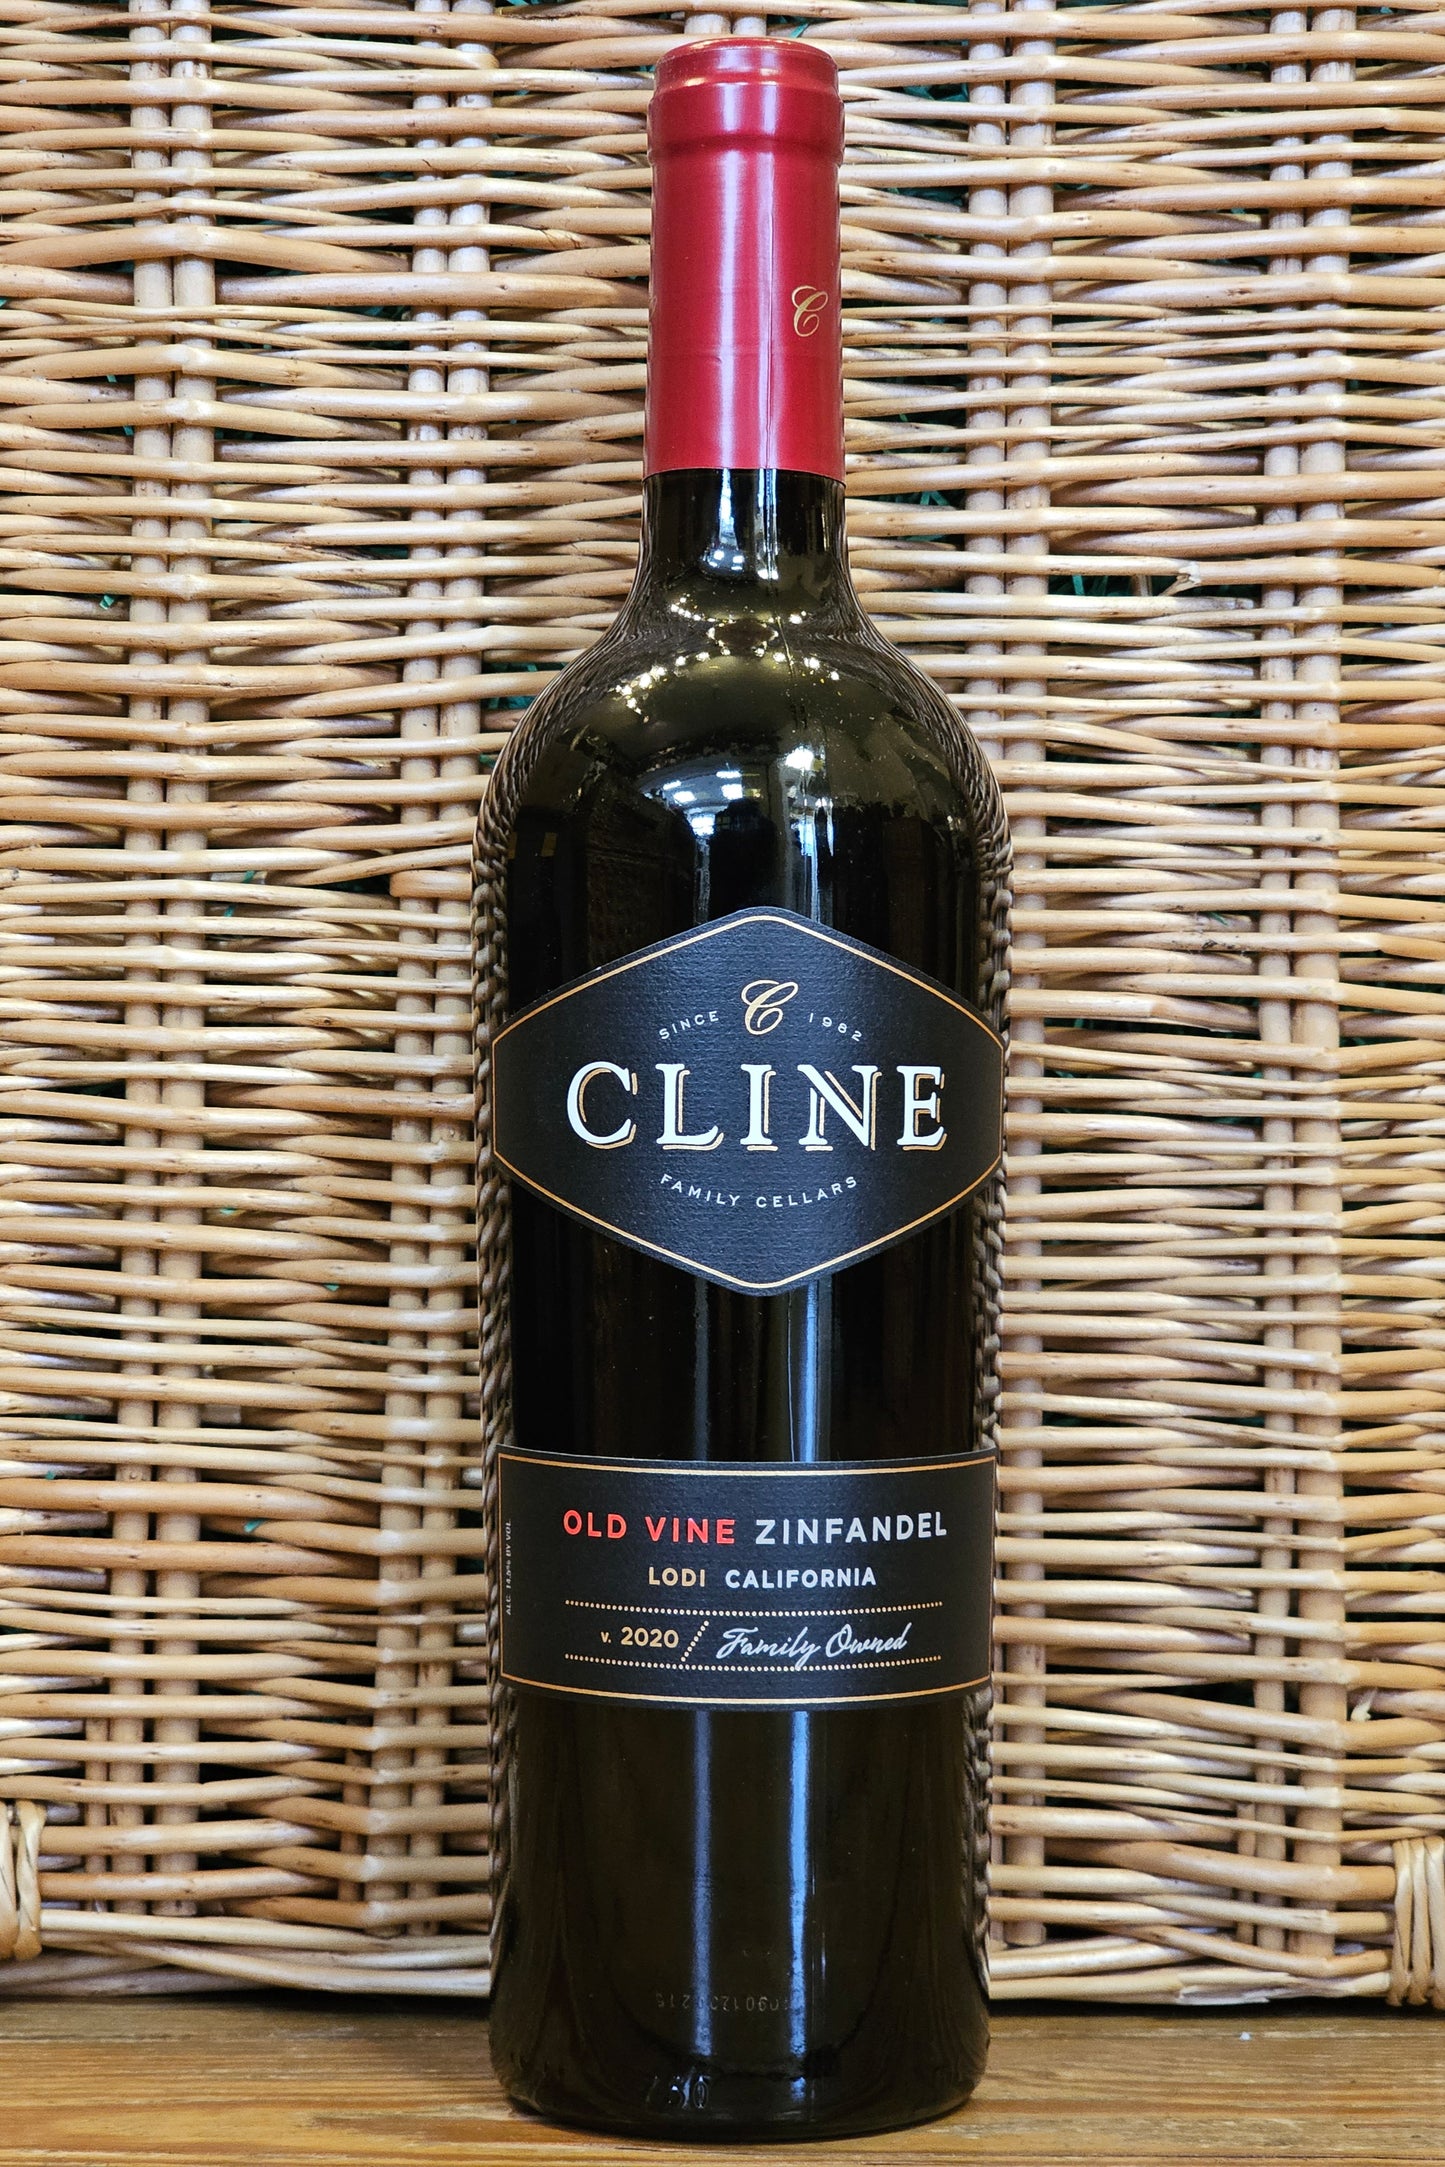 Cline Family Cellars, Old Vine Zinfandel, 2020